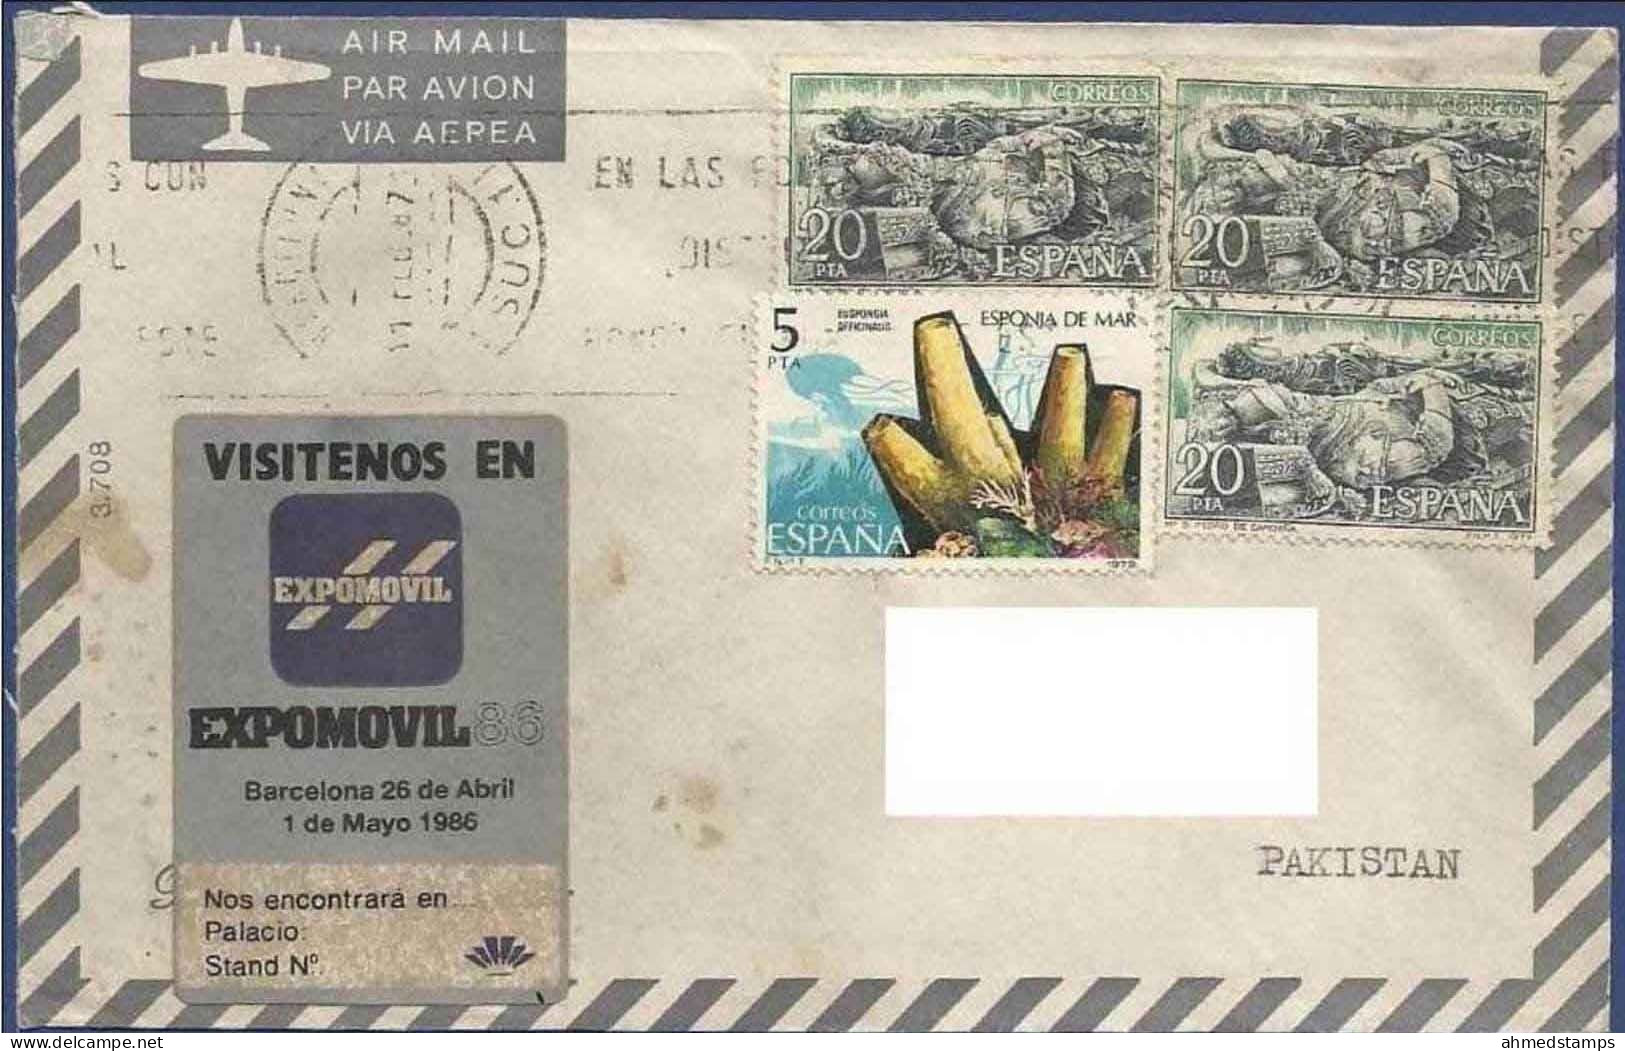 SPAIN 1987 POSTAL USED AIRMAIL COVER TO PAKISTAN - Cartas & Documentos